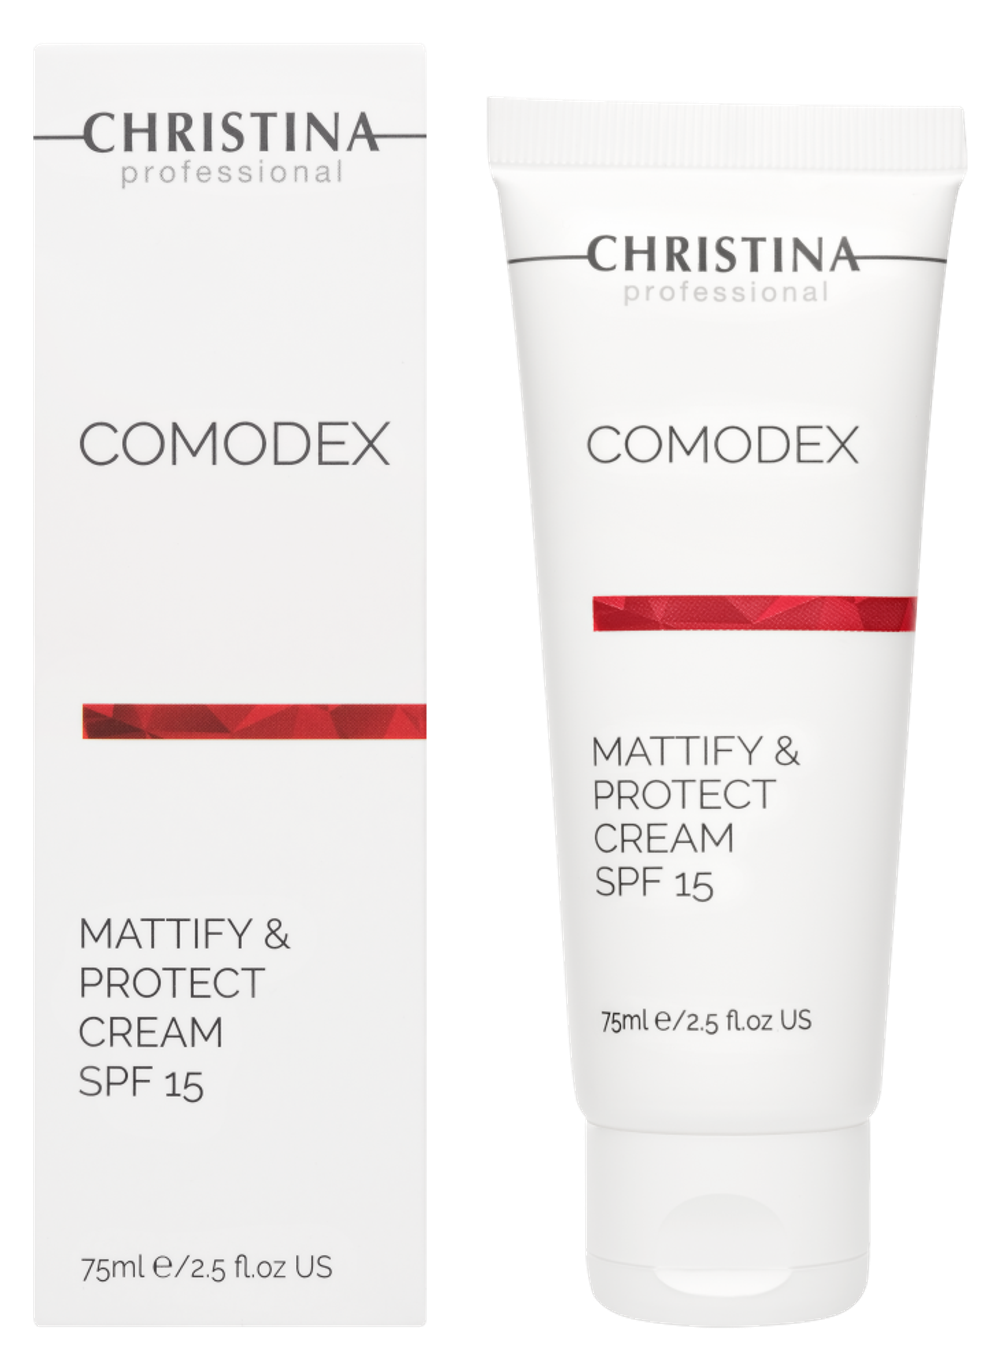 CHRISTINA Comodex Mattify & Protect Cream SPF 15